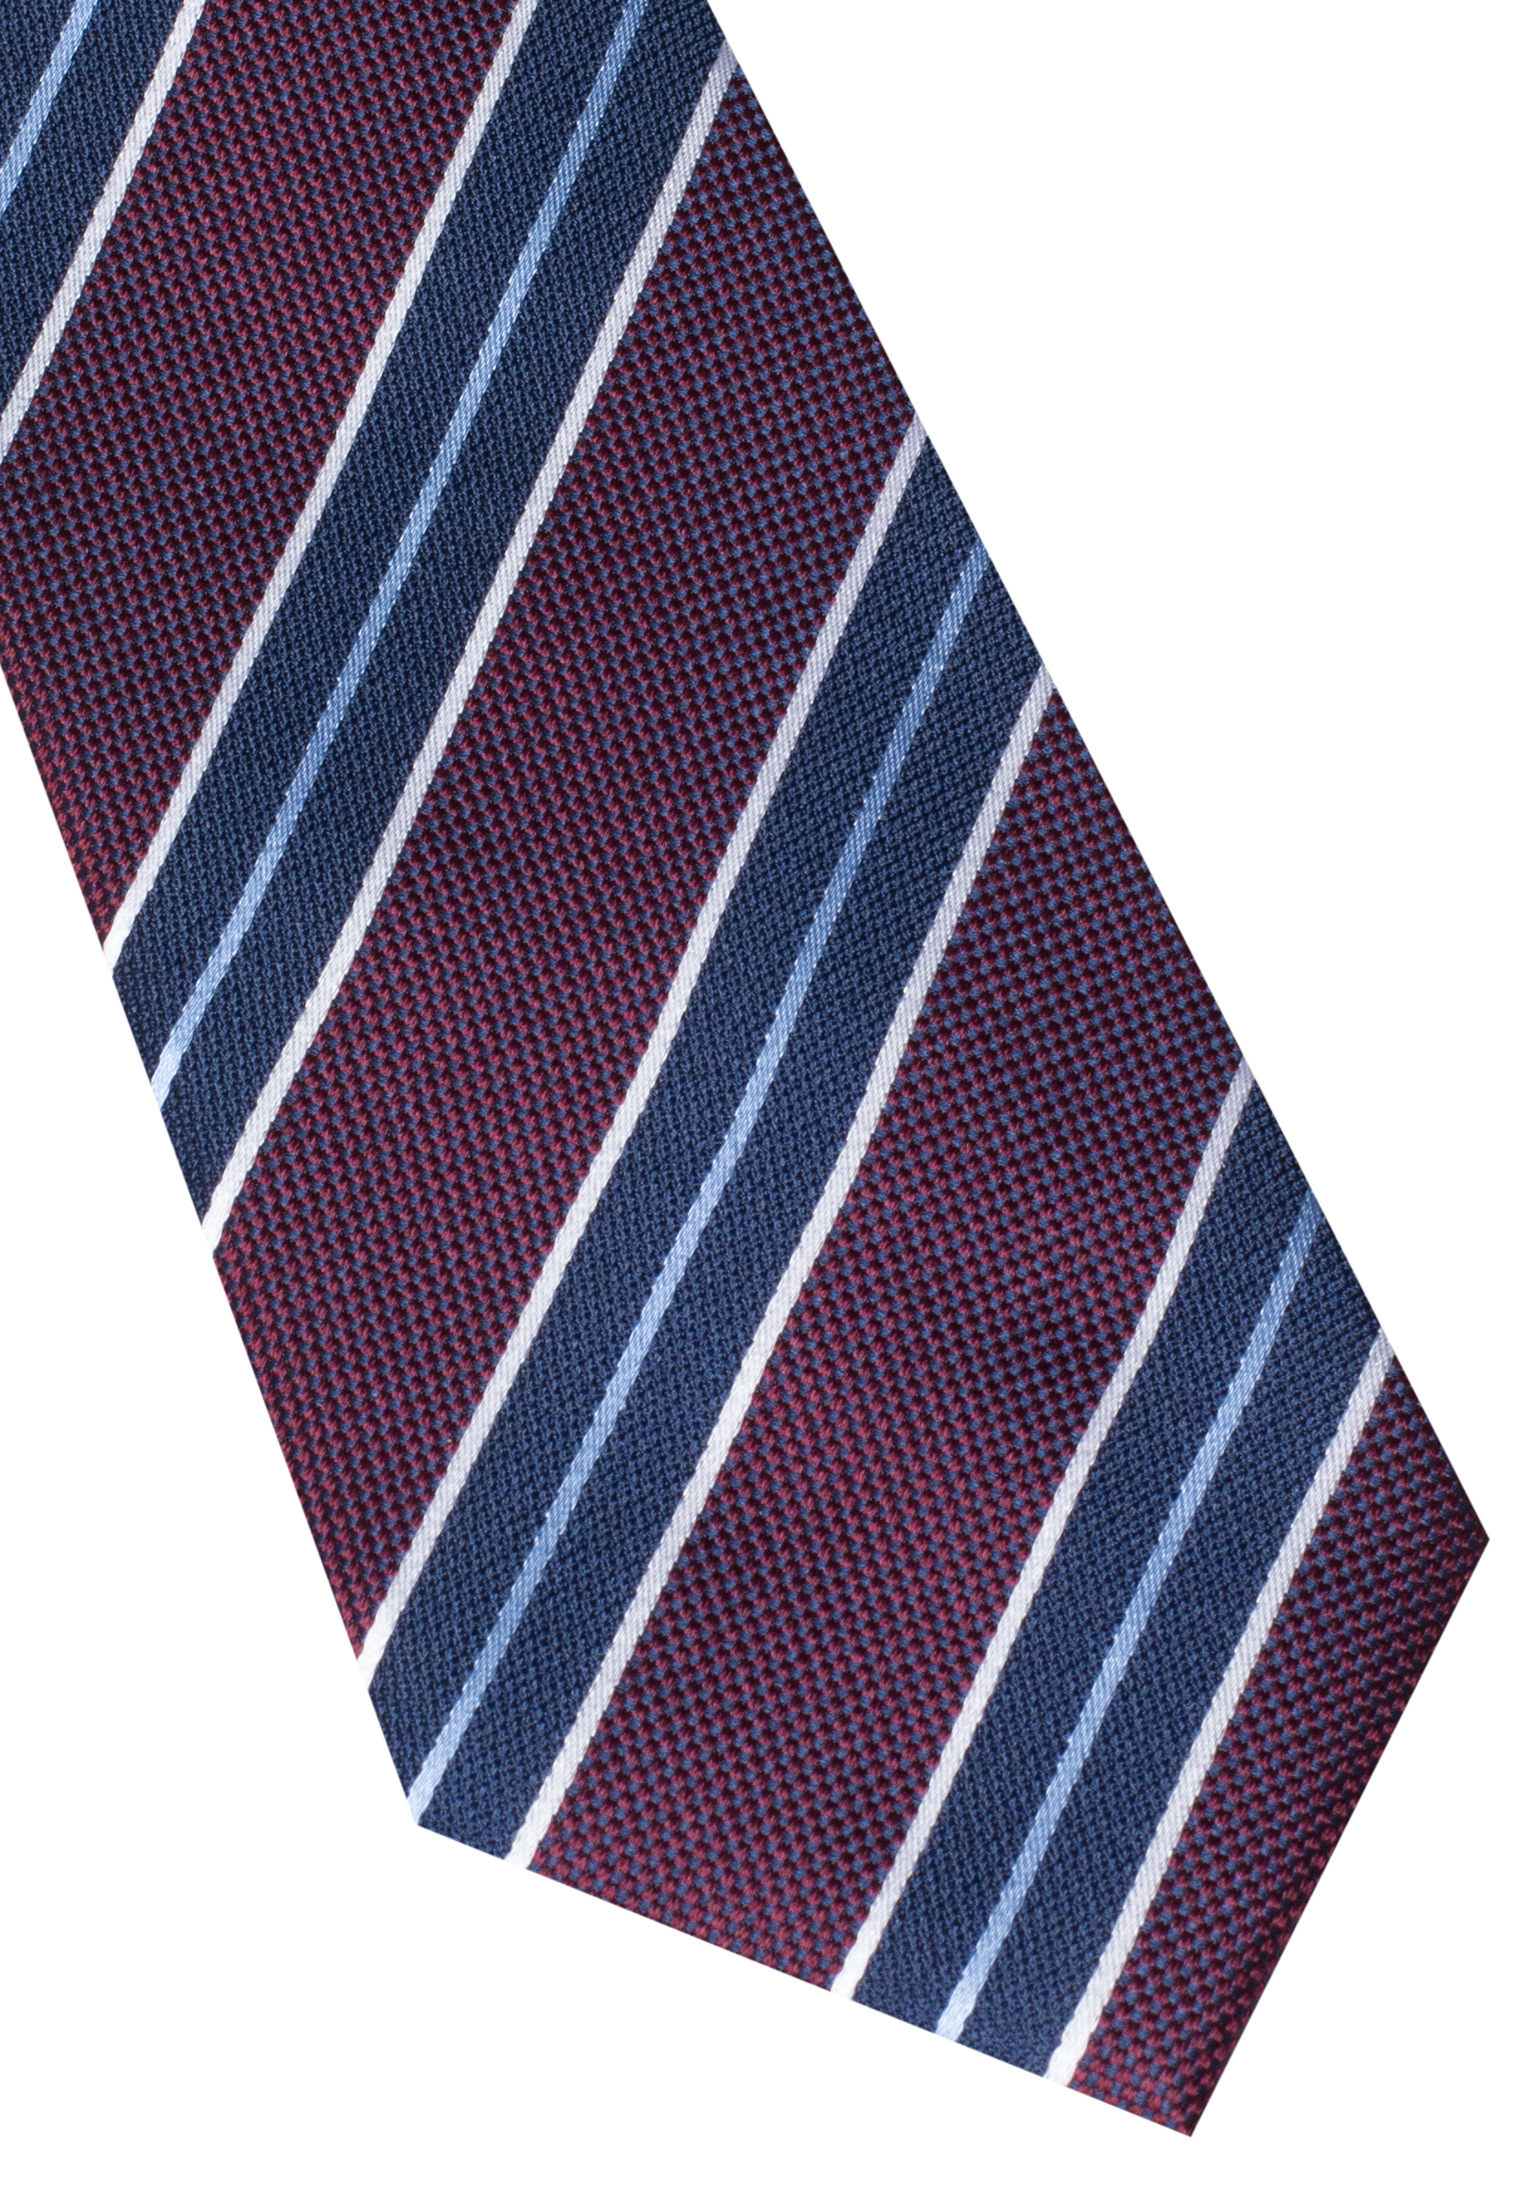 142 Krawatte | in gestreift 1AC00533-05-84-142 | bordeaux bordeaux |